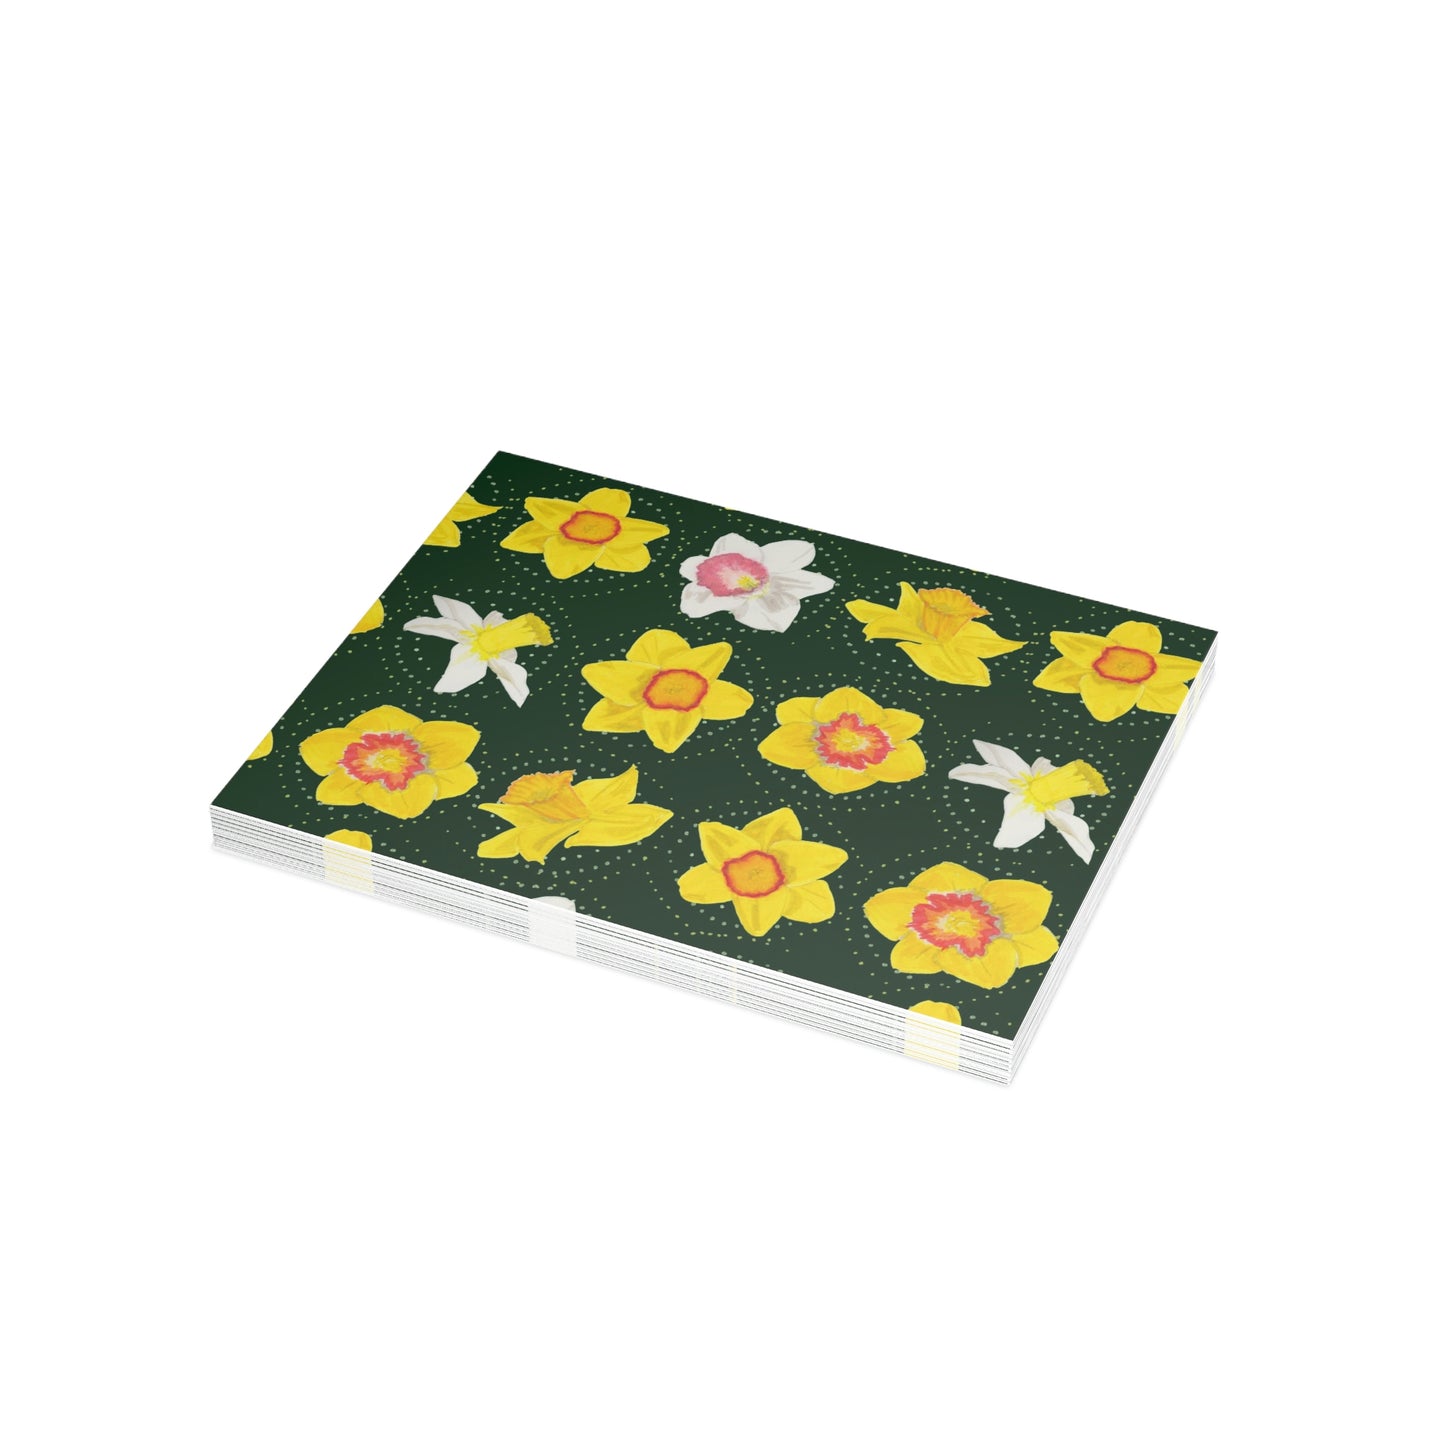 Daffodil Festival Greeting Card Bundle - Daffodils on Dark Green